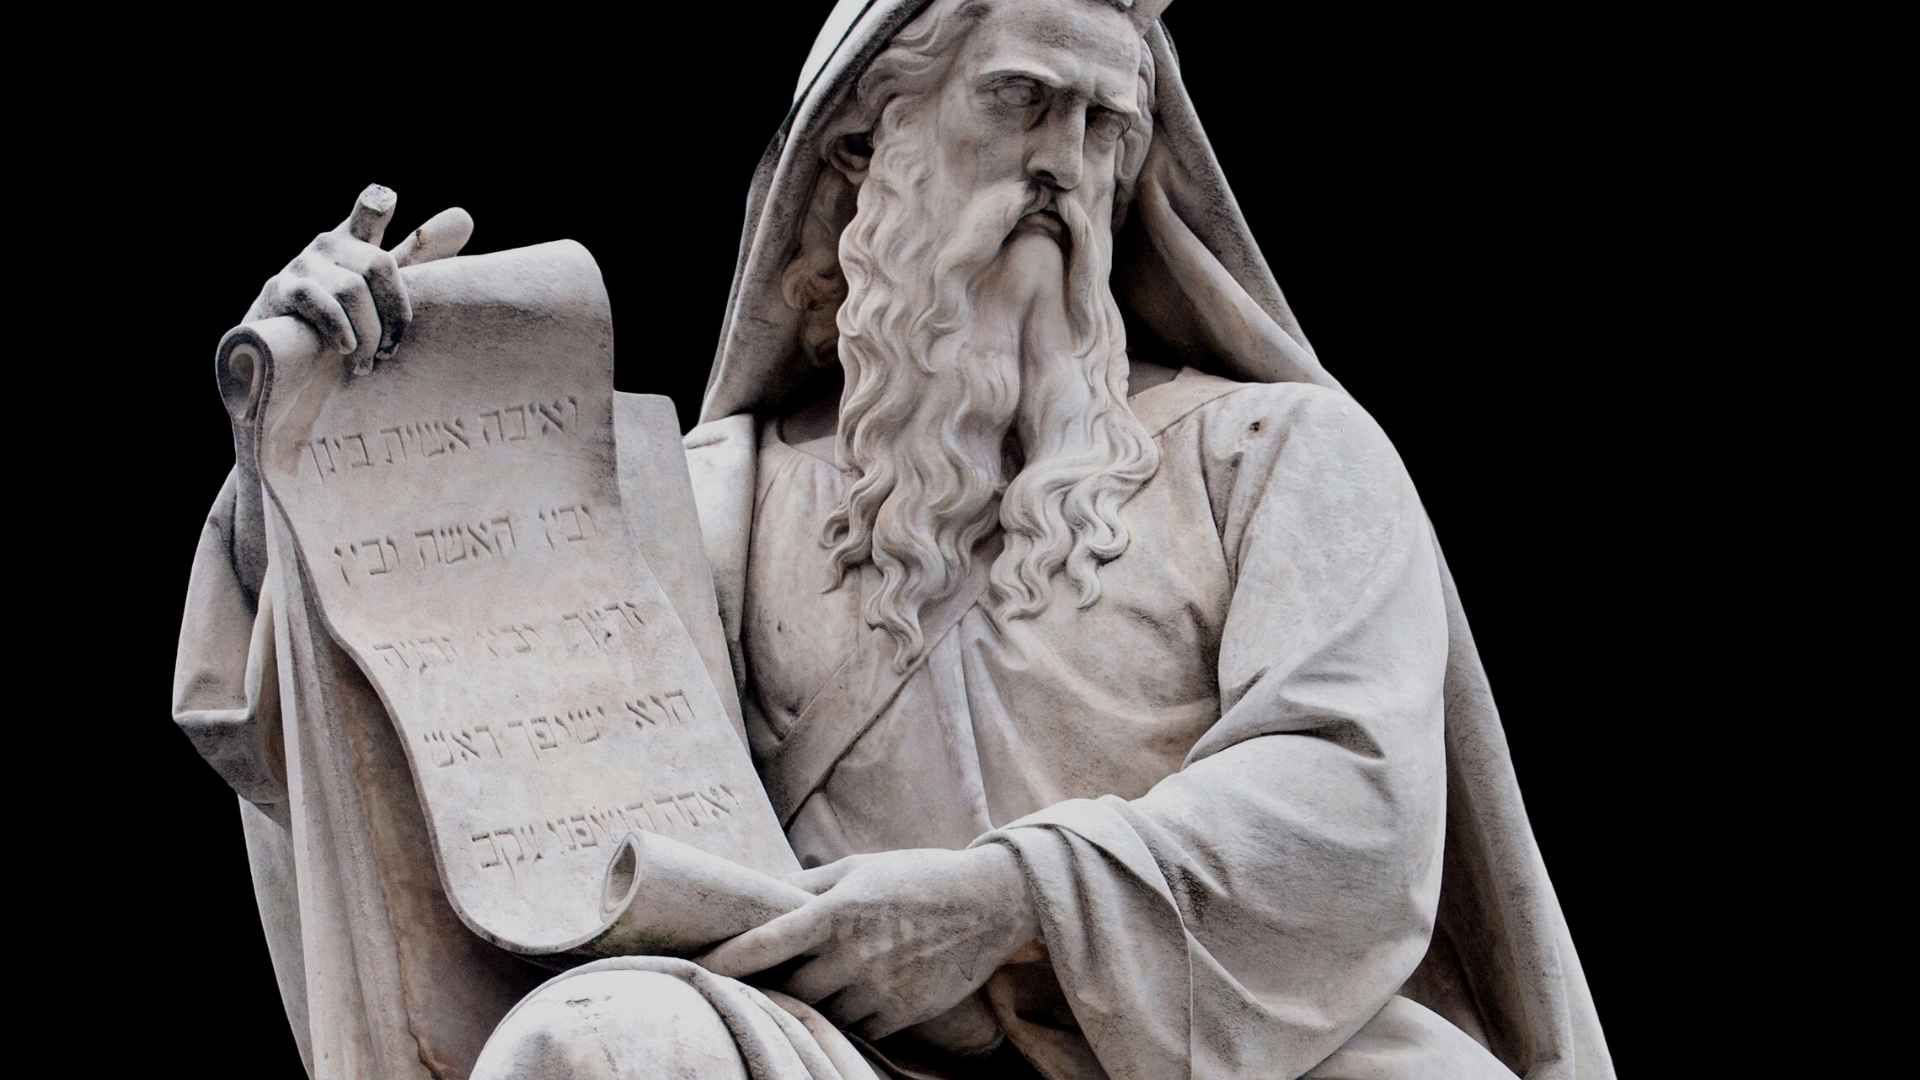 A Lei de Moisés foi abolida ou não? — Cooperadores da Verdade